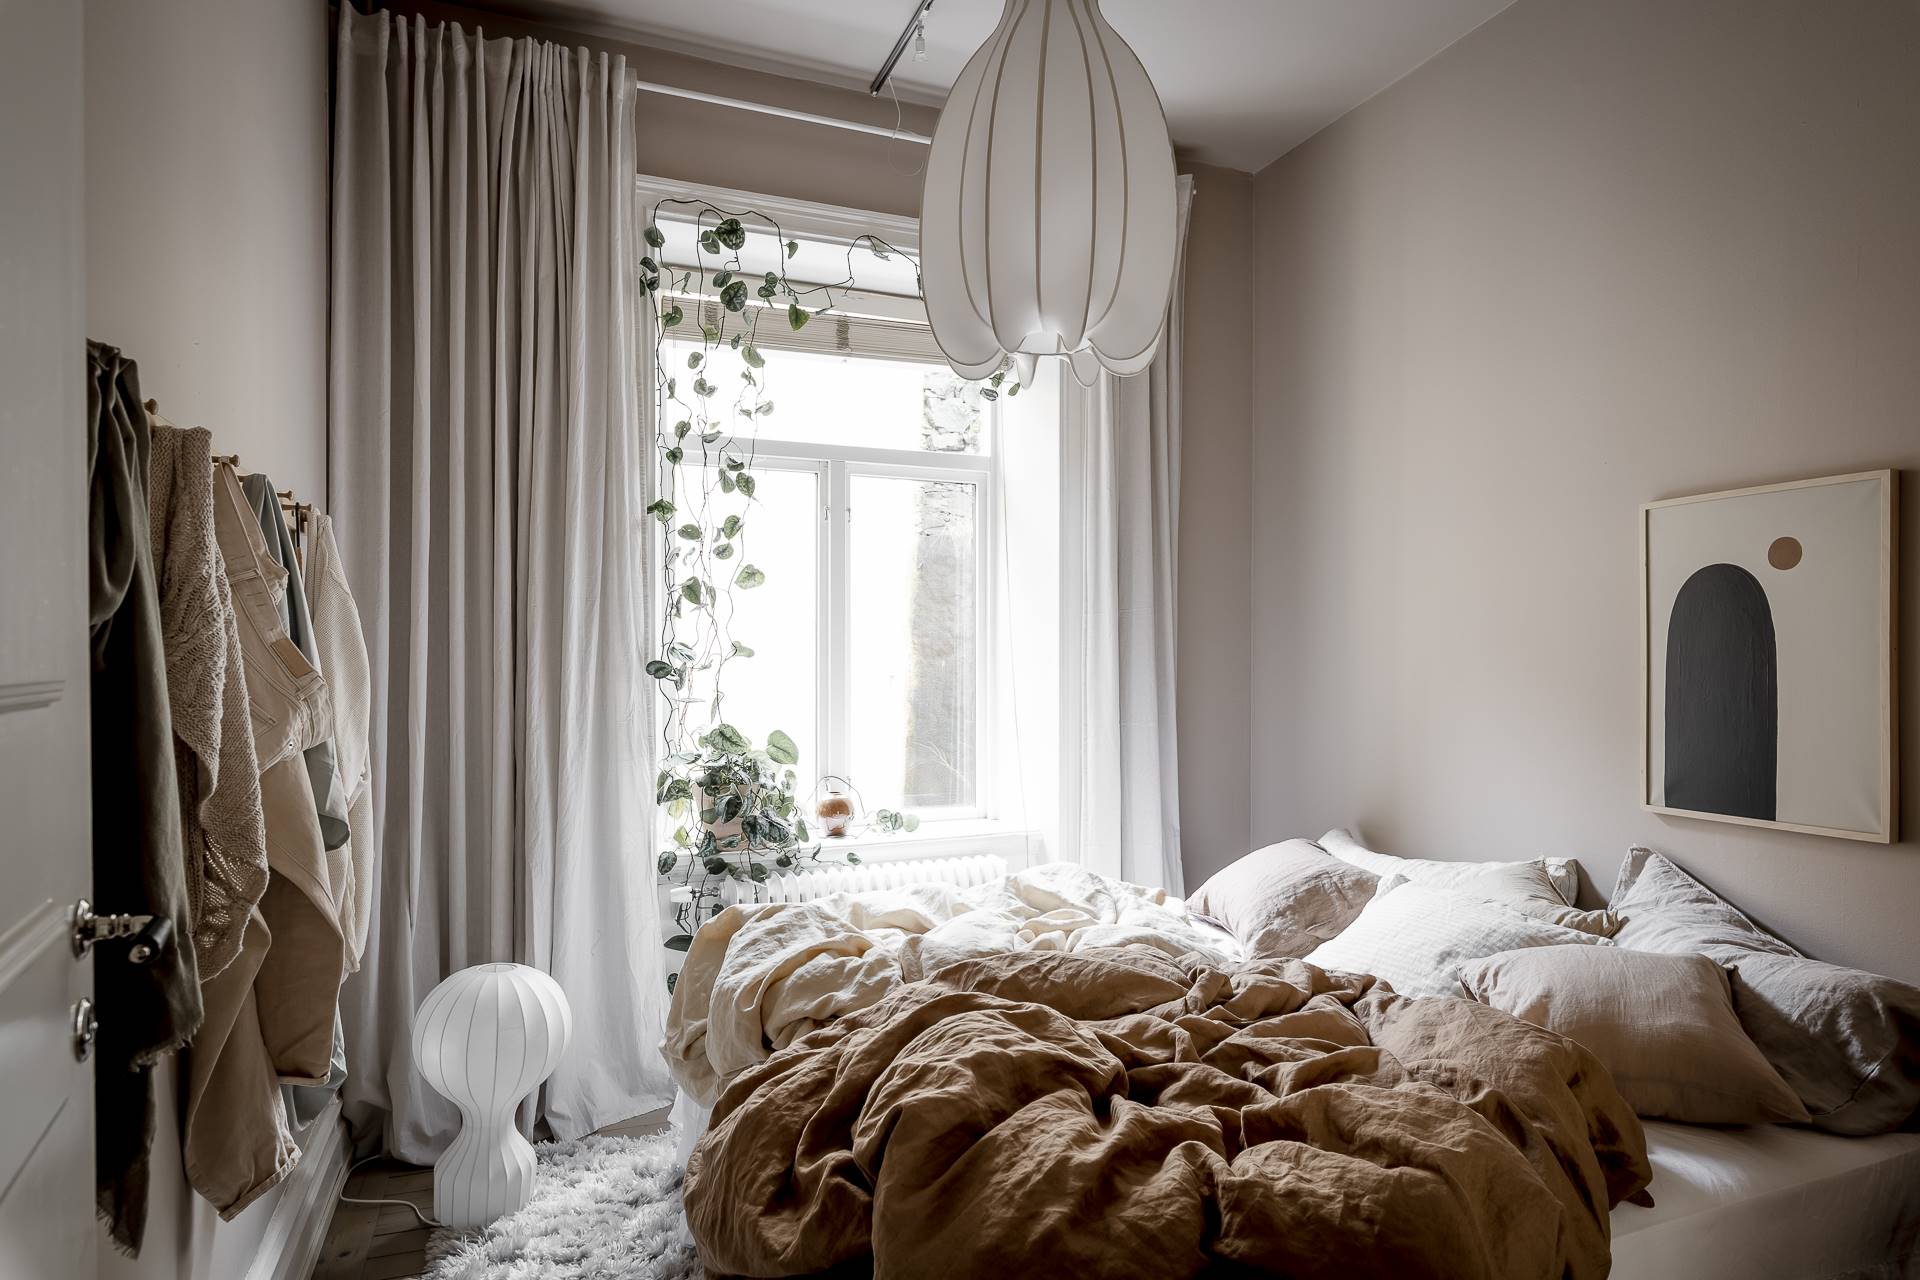 Dormitorio de diseño nórdico decorado en color topo